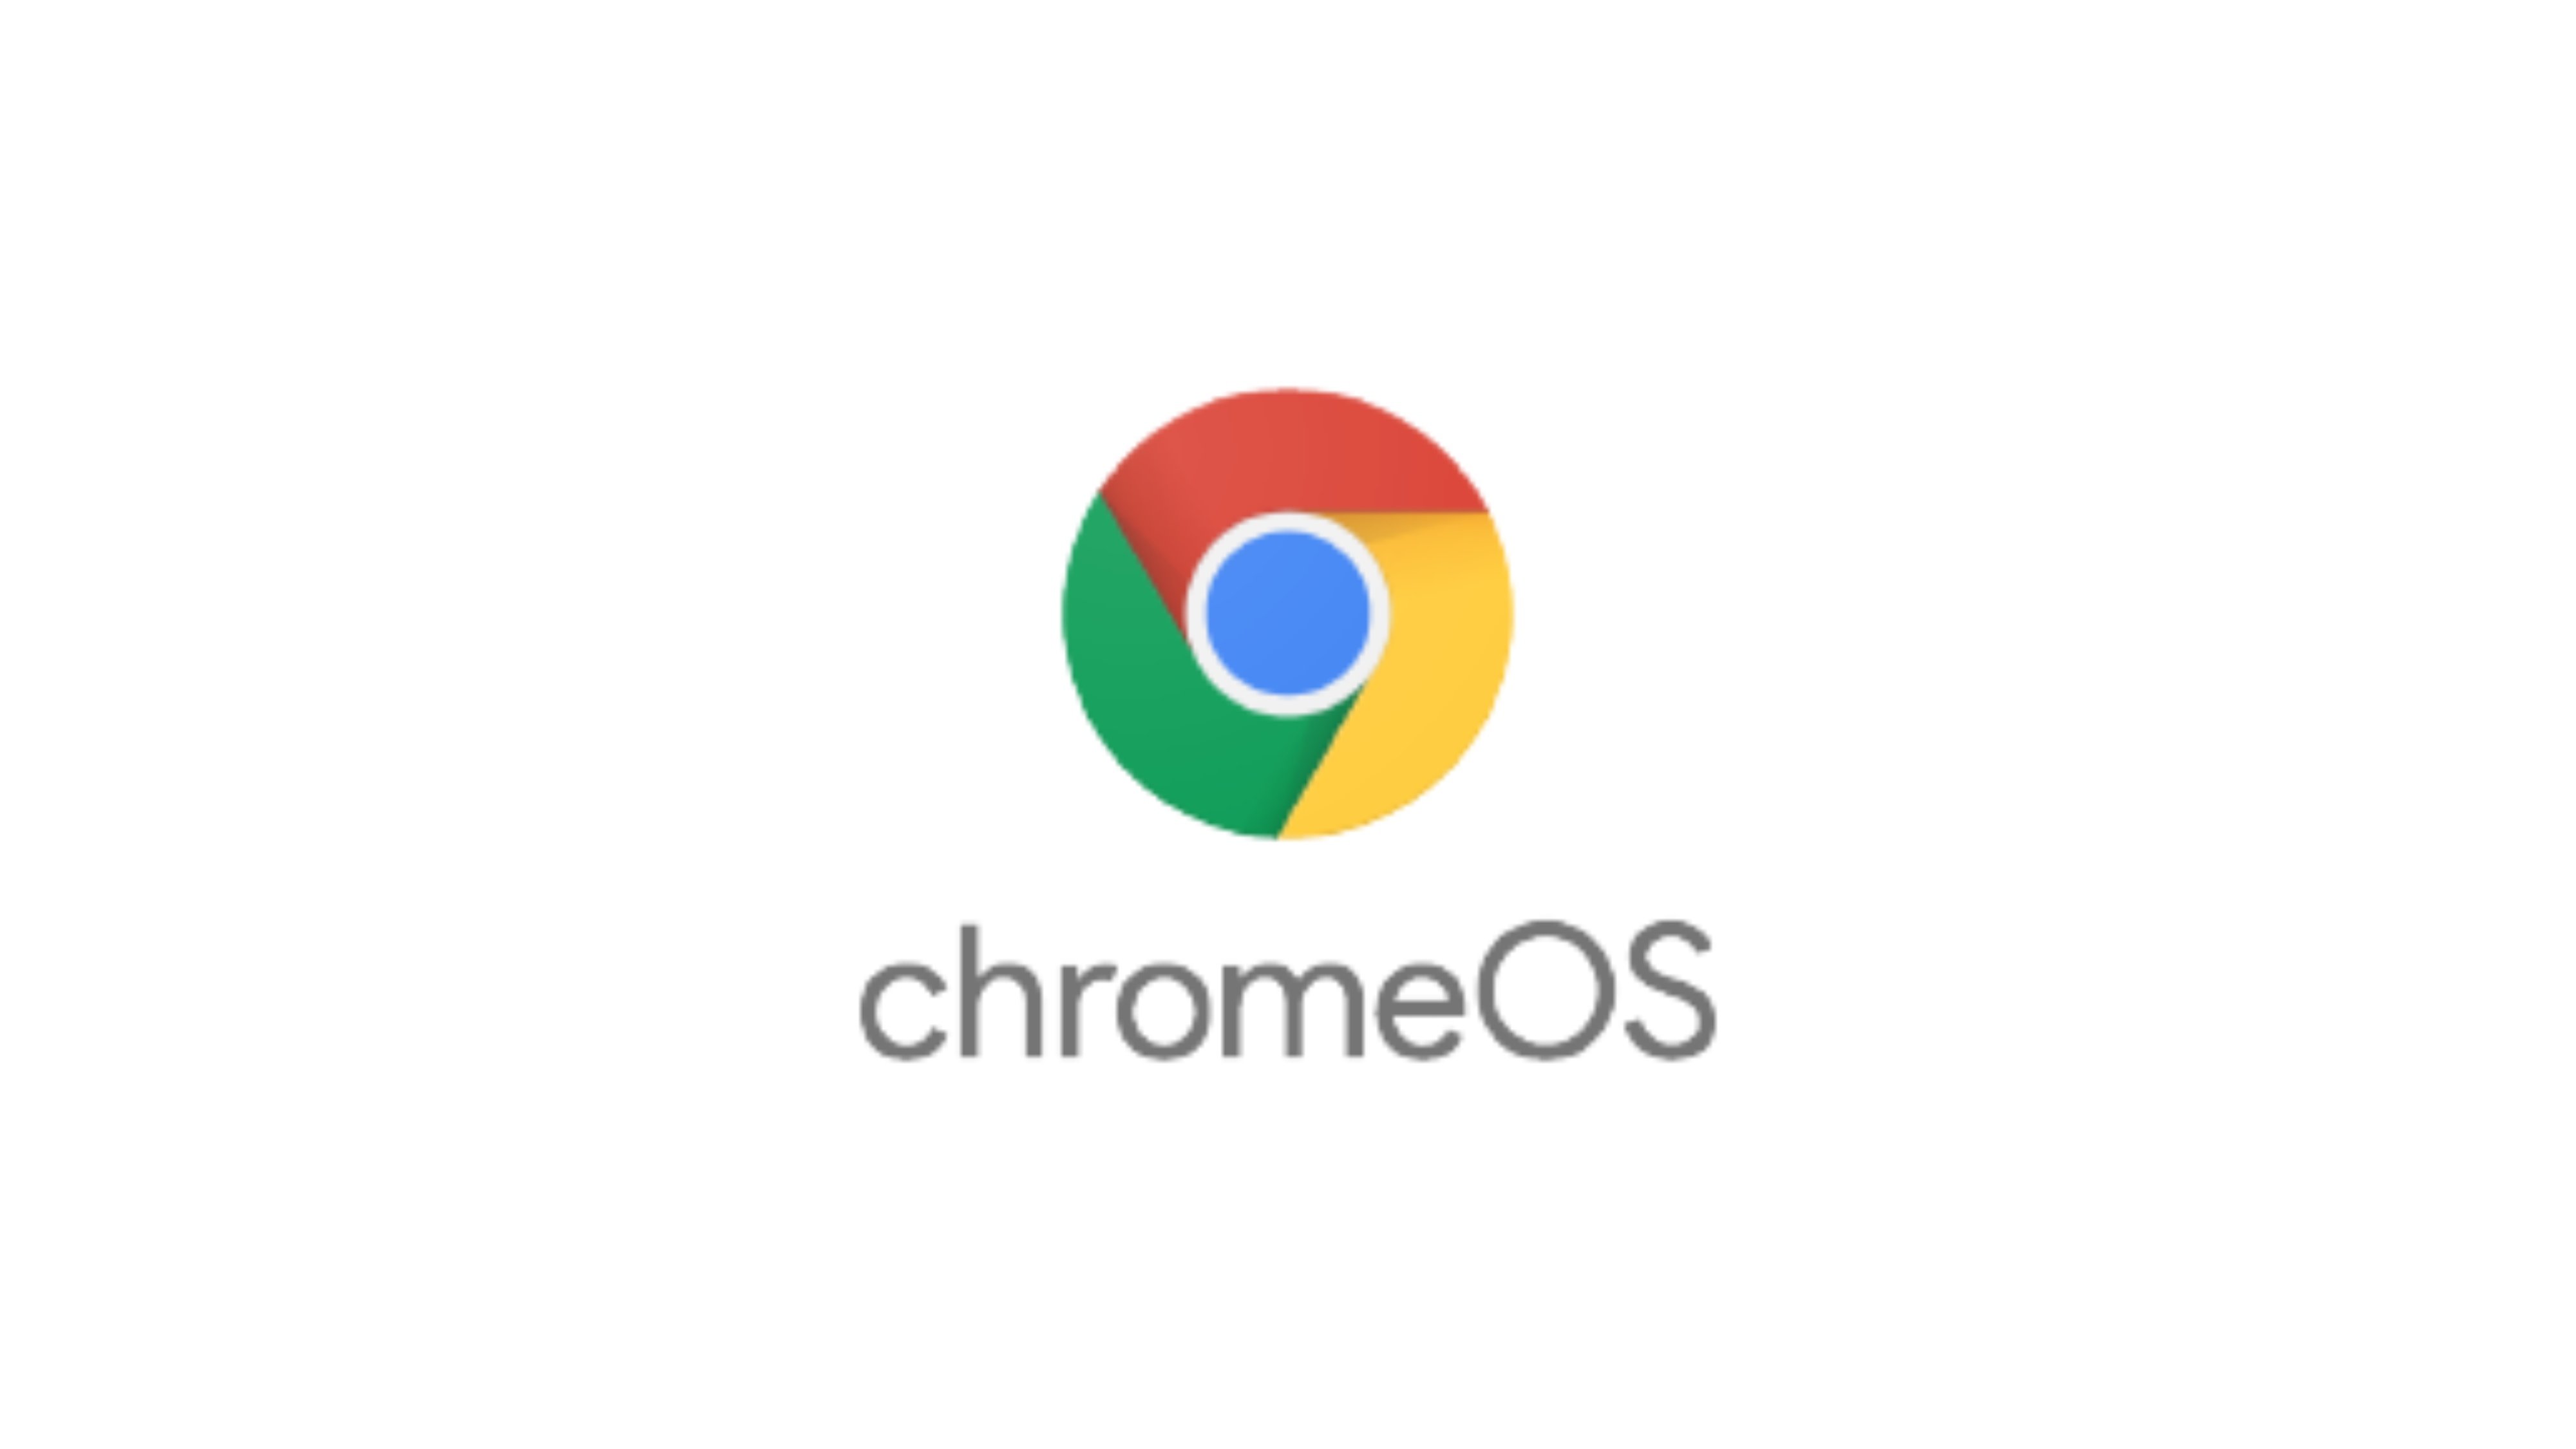 Logotipo de Google Chrome OS en primer plano